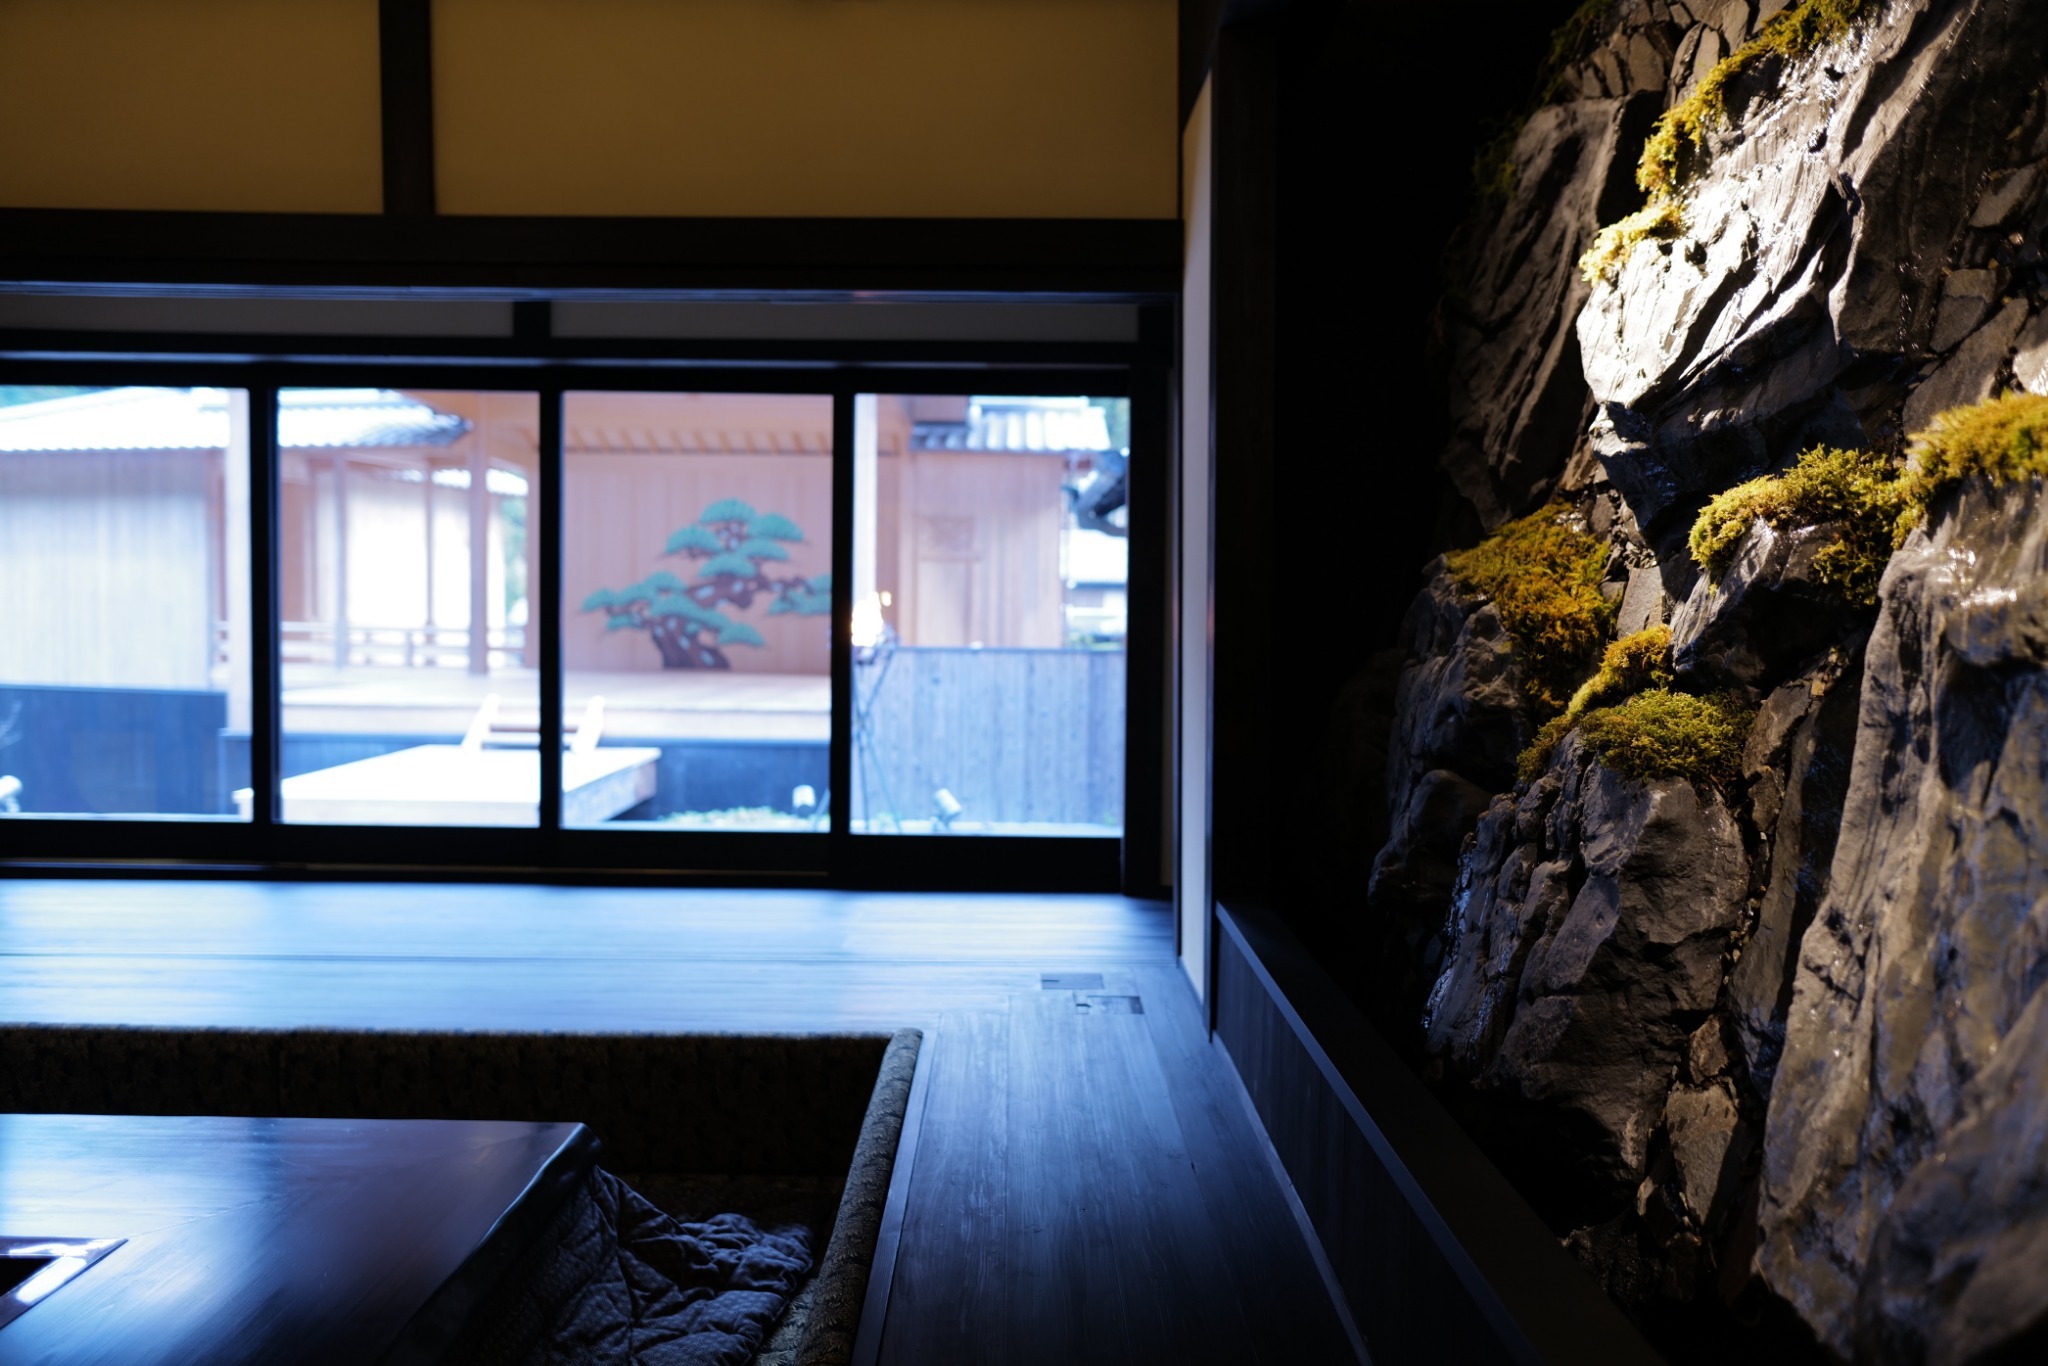 【朝夕食付きプラン】1日1組限定で完全プライベートな空間で、江戸時代の武家屋敷かのような施設